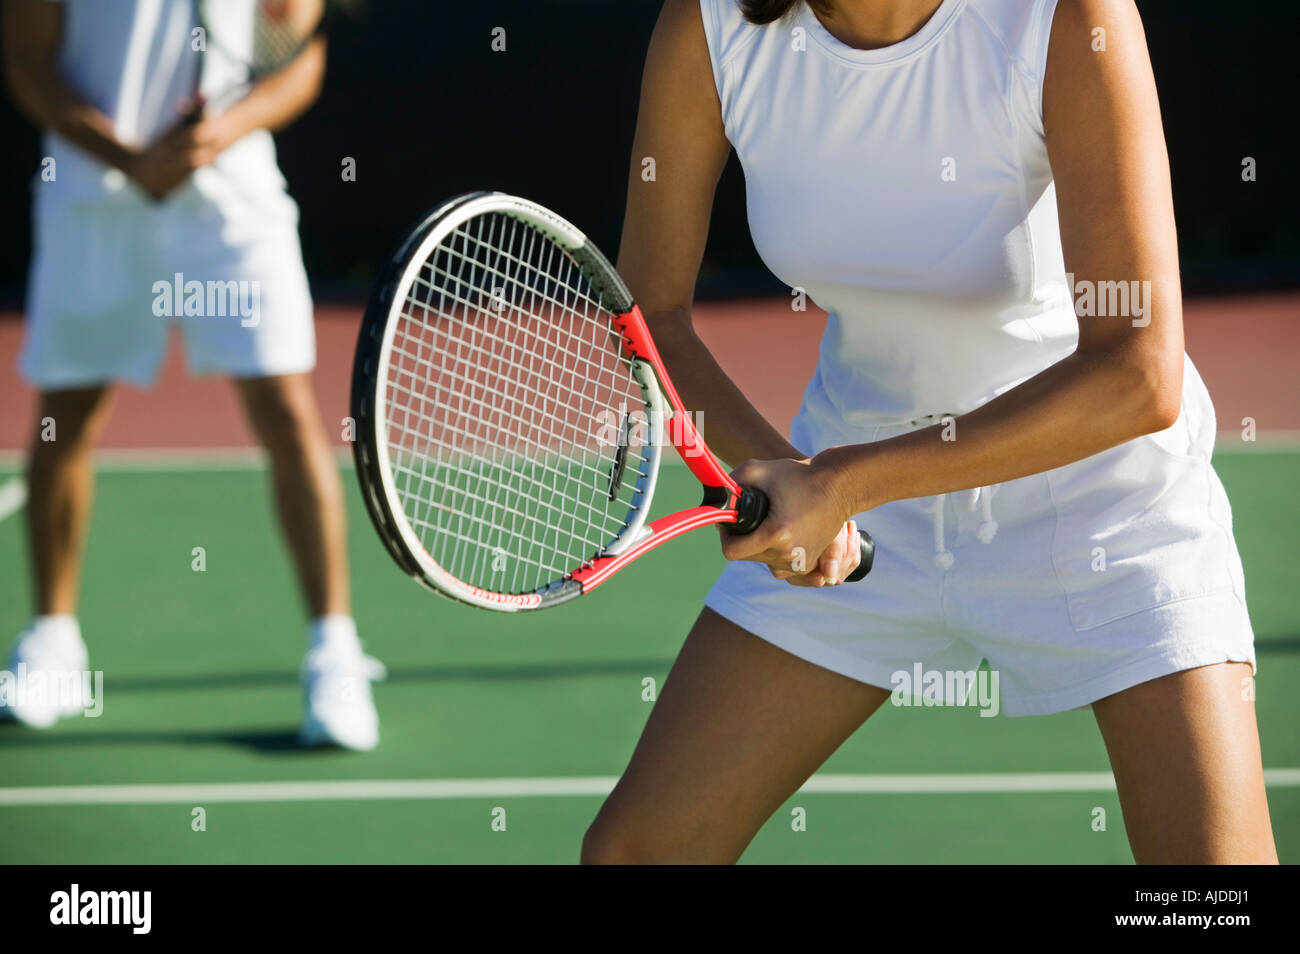 Double mixte, les joueurs de tennis sur le court, l'accent sur femme, mid section Banque D'Images